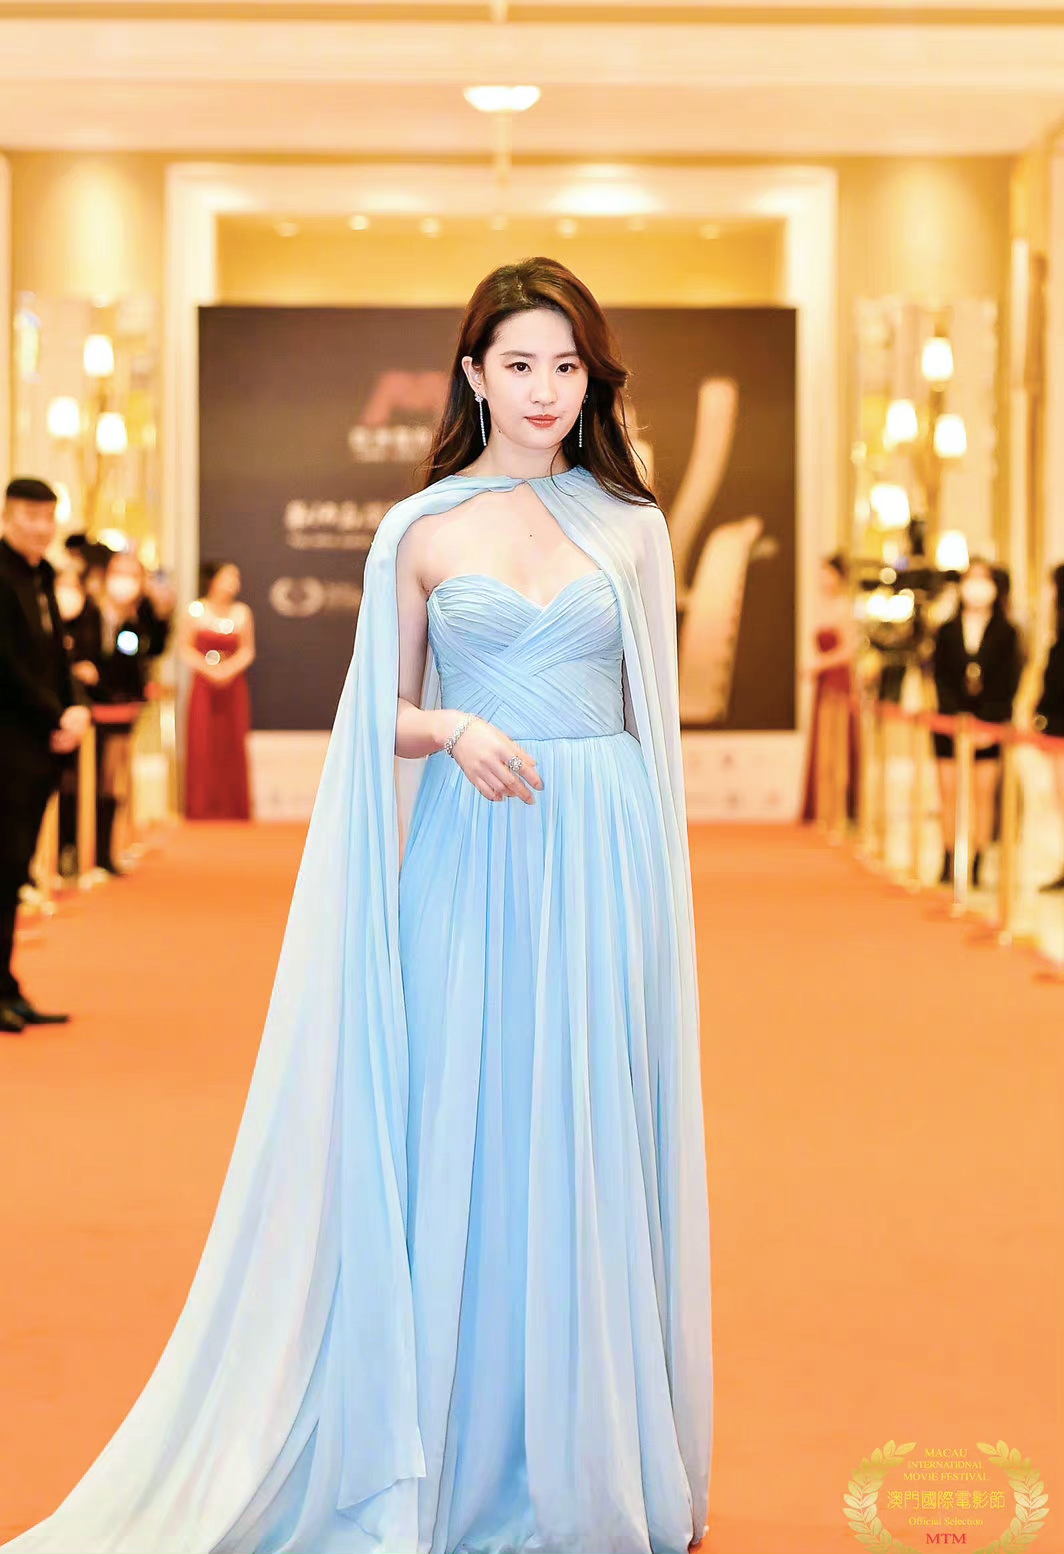 刘亦菲出席澳门国际电影节,一袭蓝色抹胸纱裙造型好美